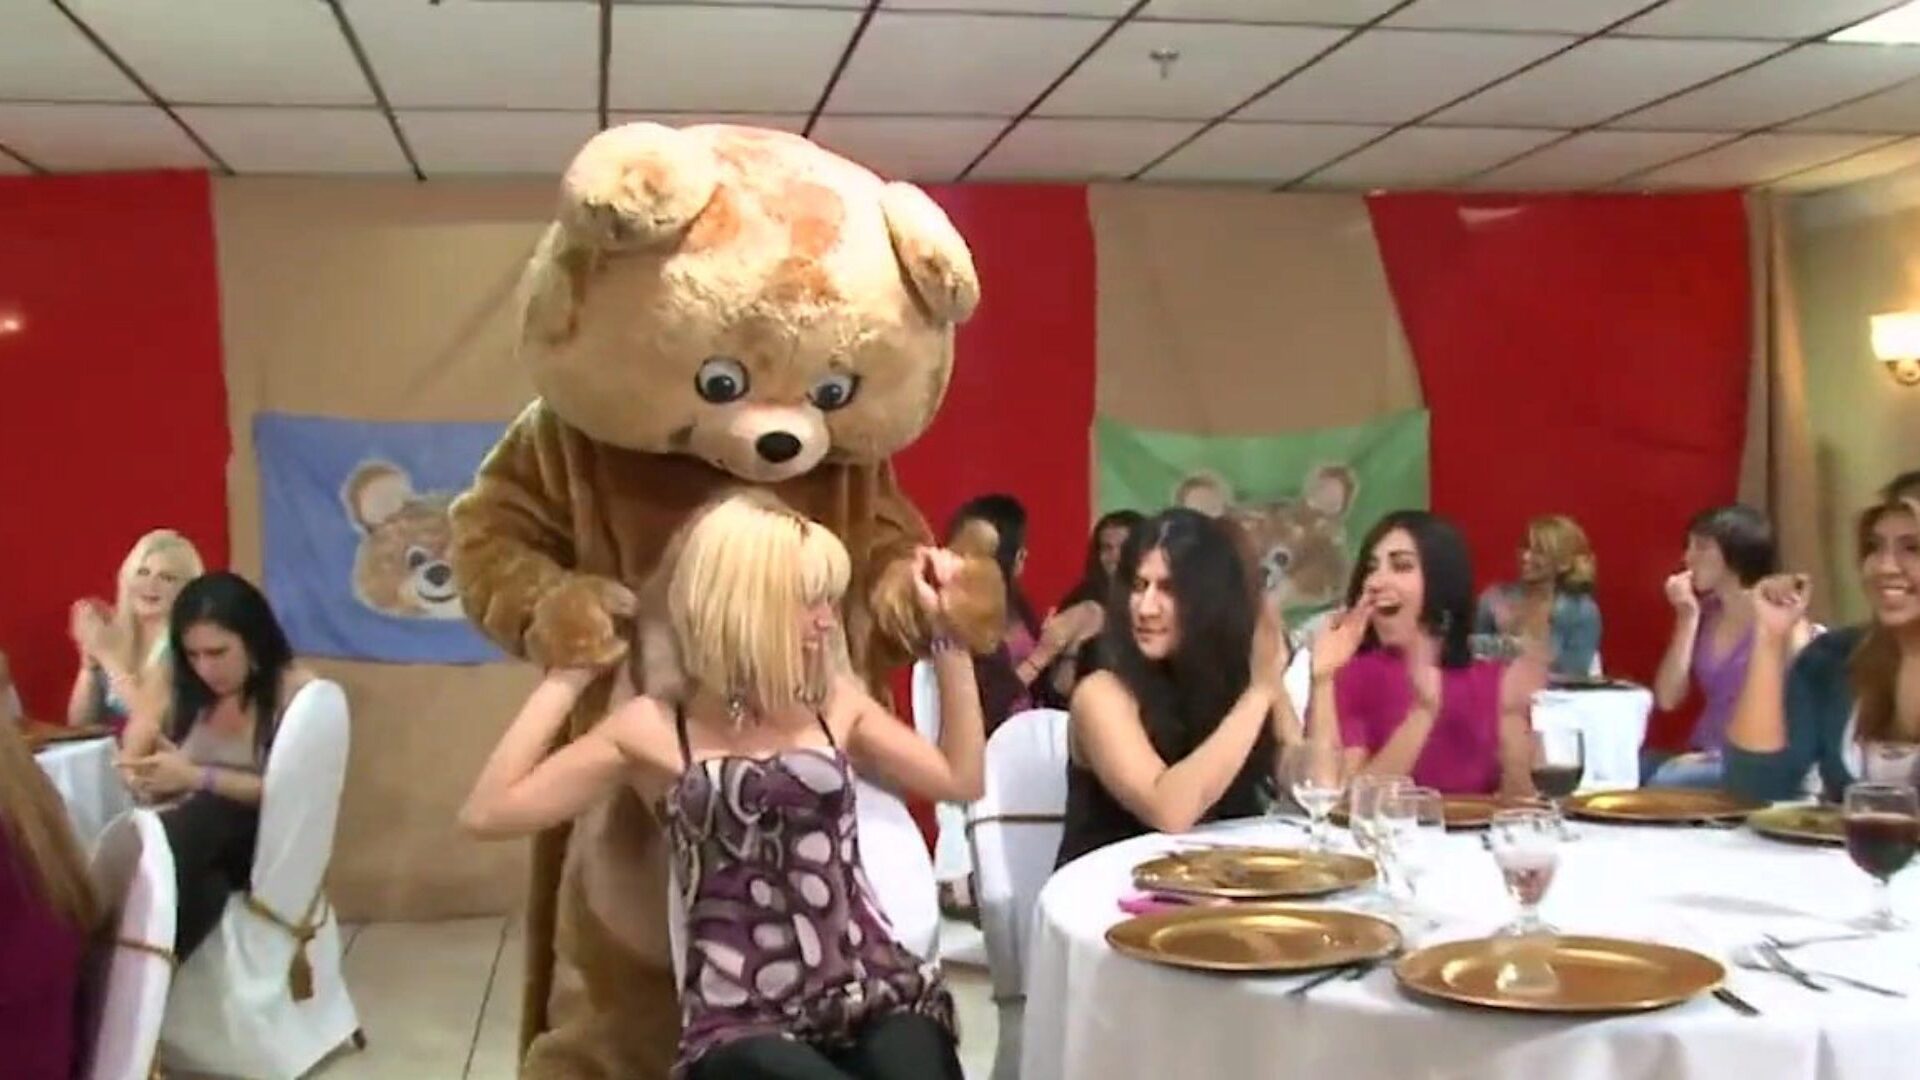 dansende beer - een stel geile vrouwen zuigen mannelijke stripper lullen op een feestje